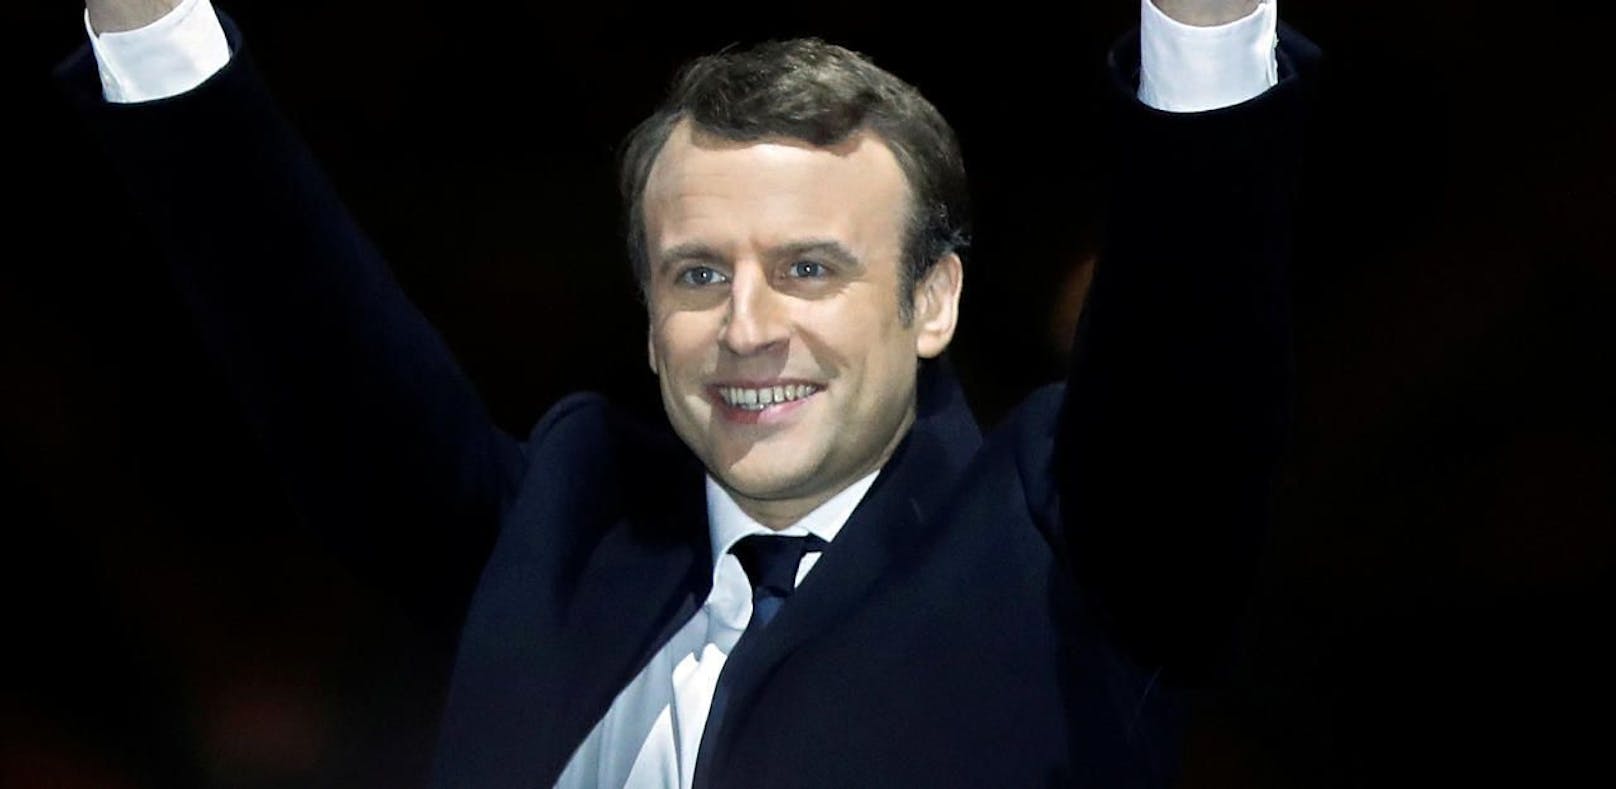 Emmanuel Macron, der neue französische Präsident